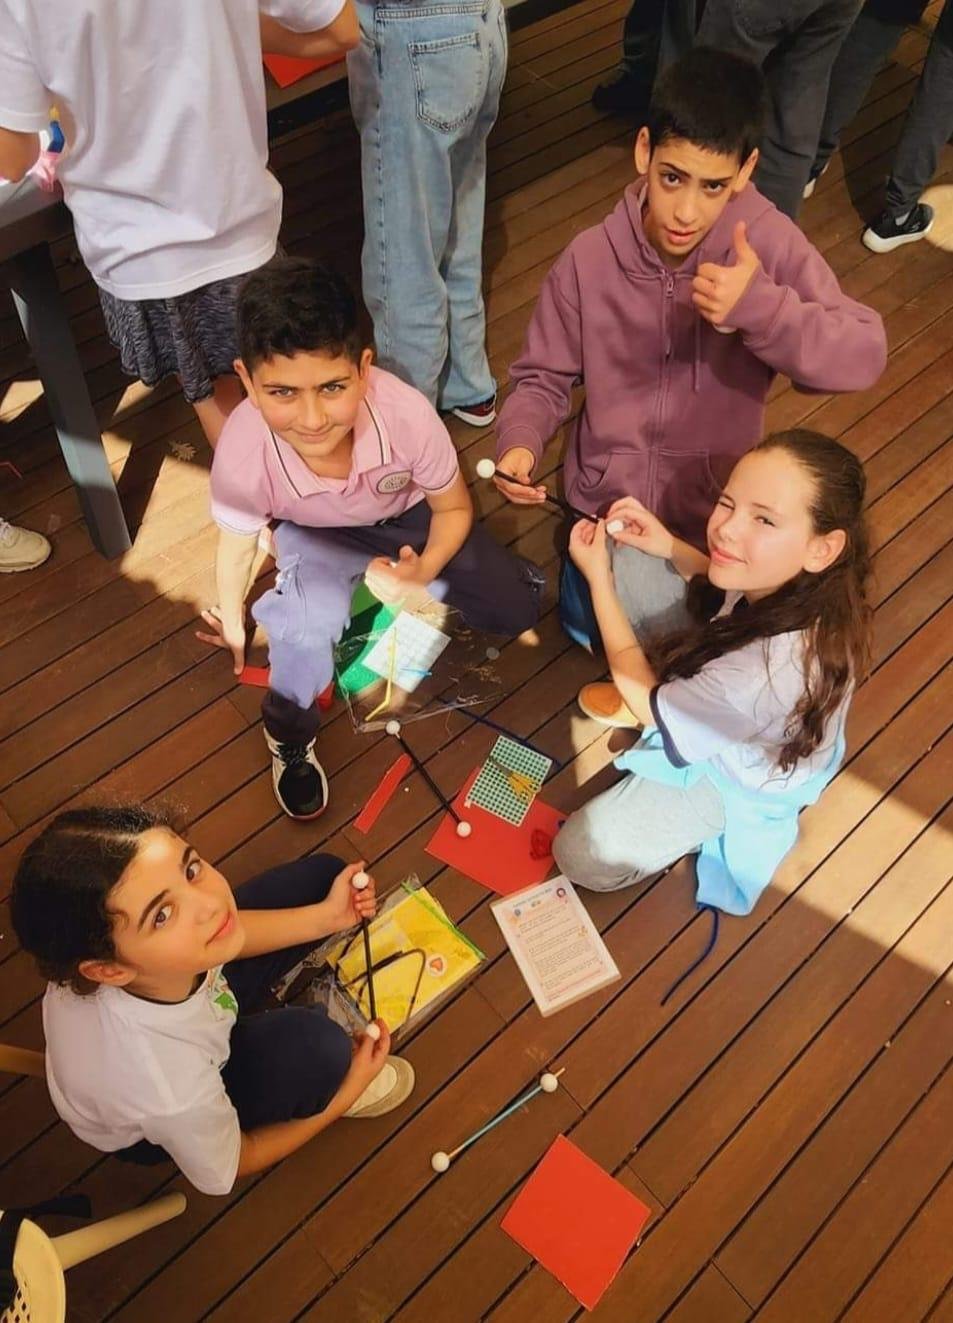 مدرسة الواصفية في الناصرة تتفوق وتعزز العلاقات مع الطلاب والأهل تحت عنوان "التعليم بمتعة"-35